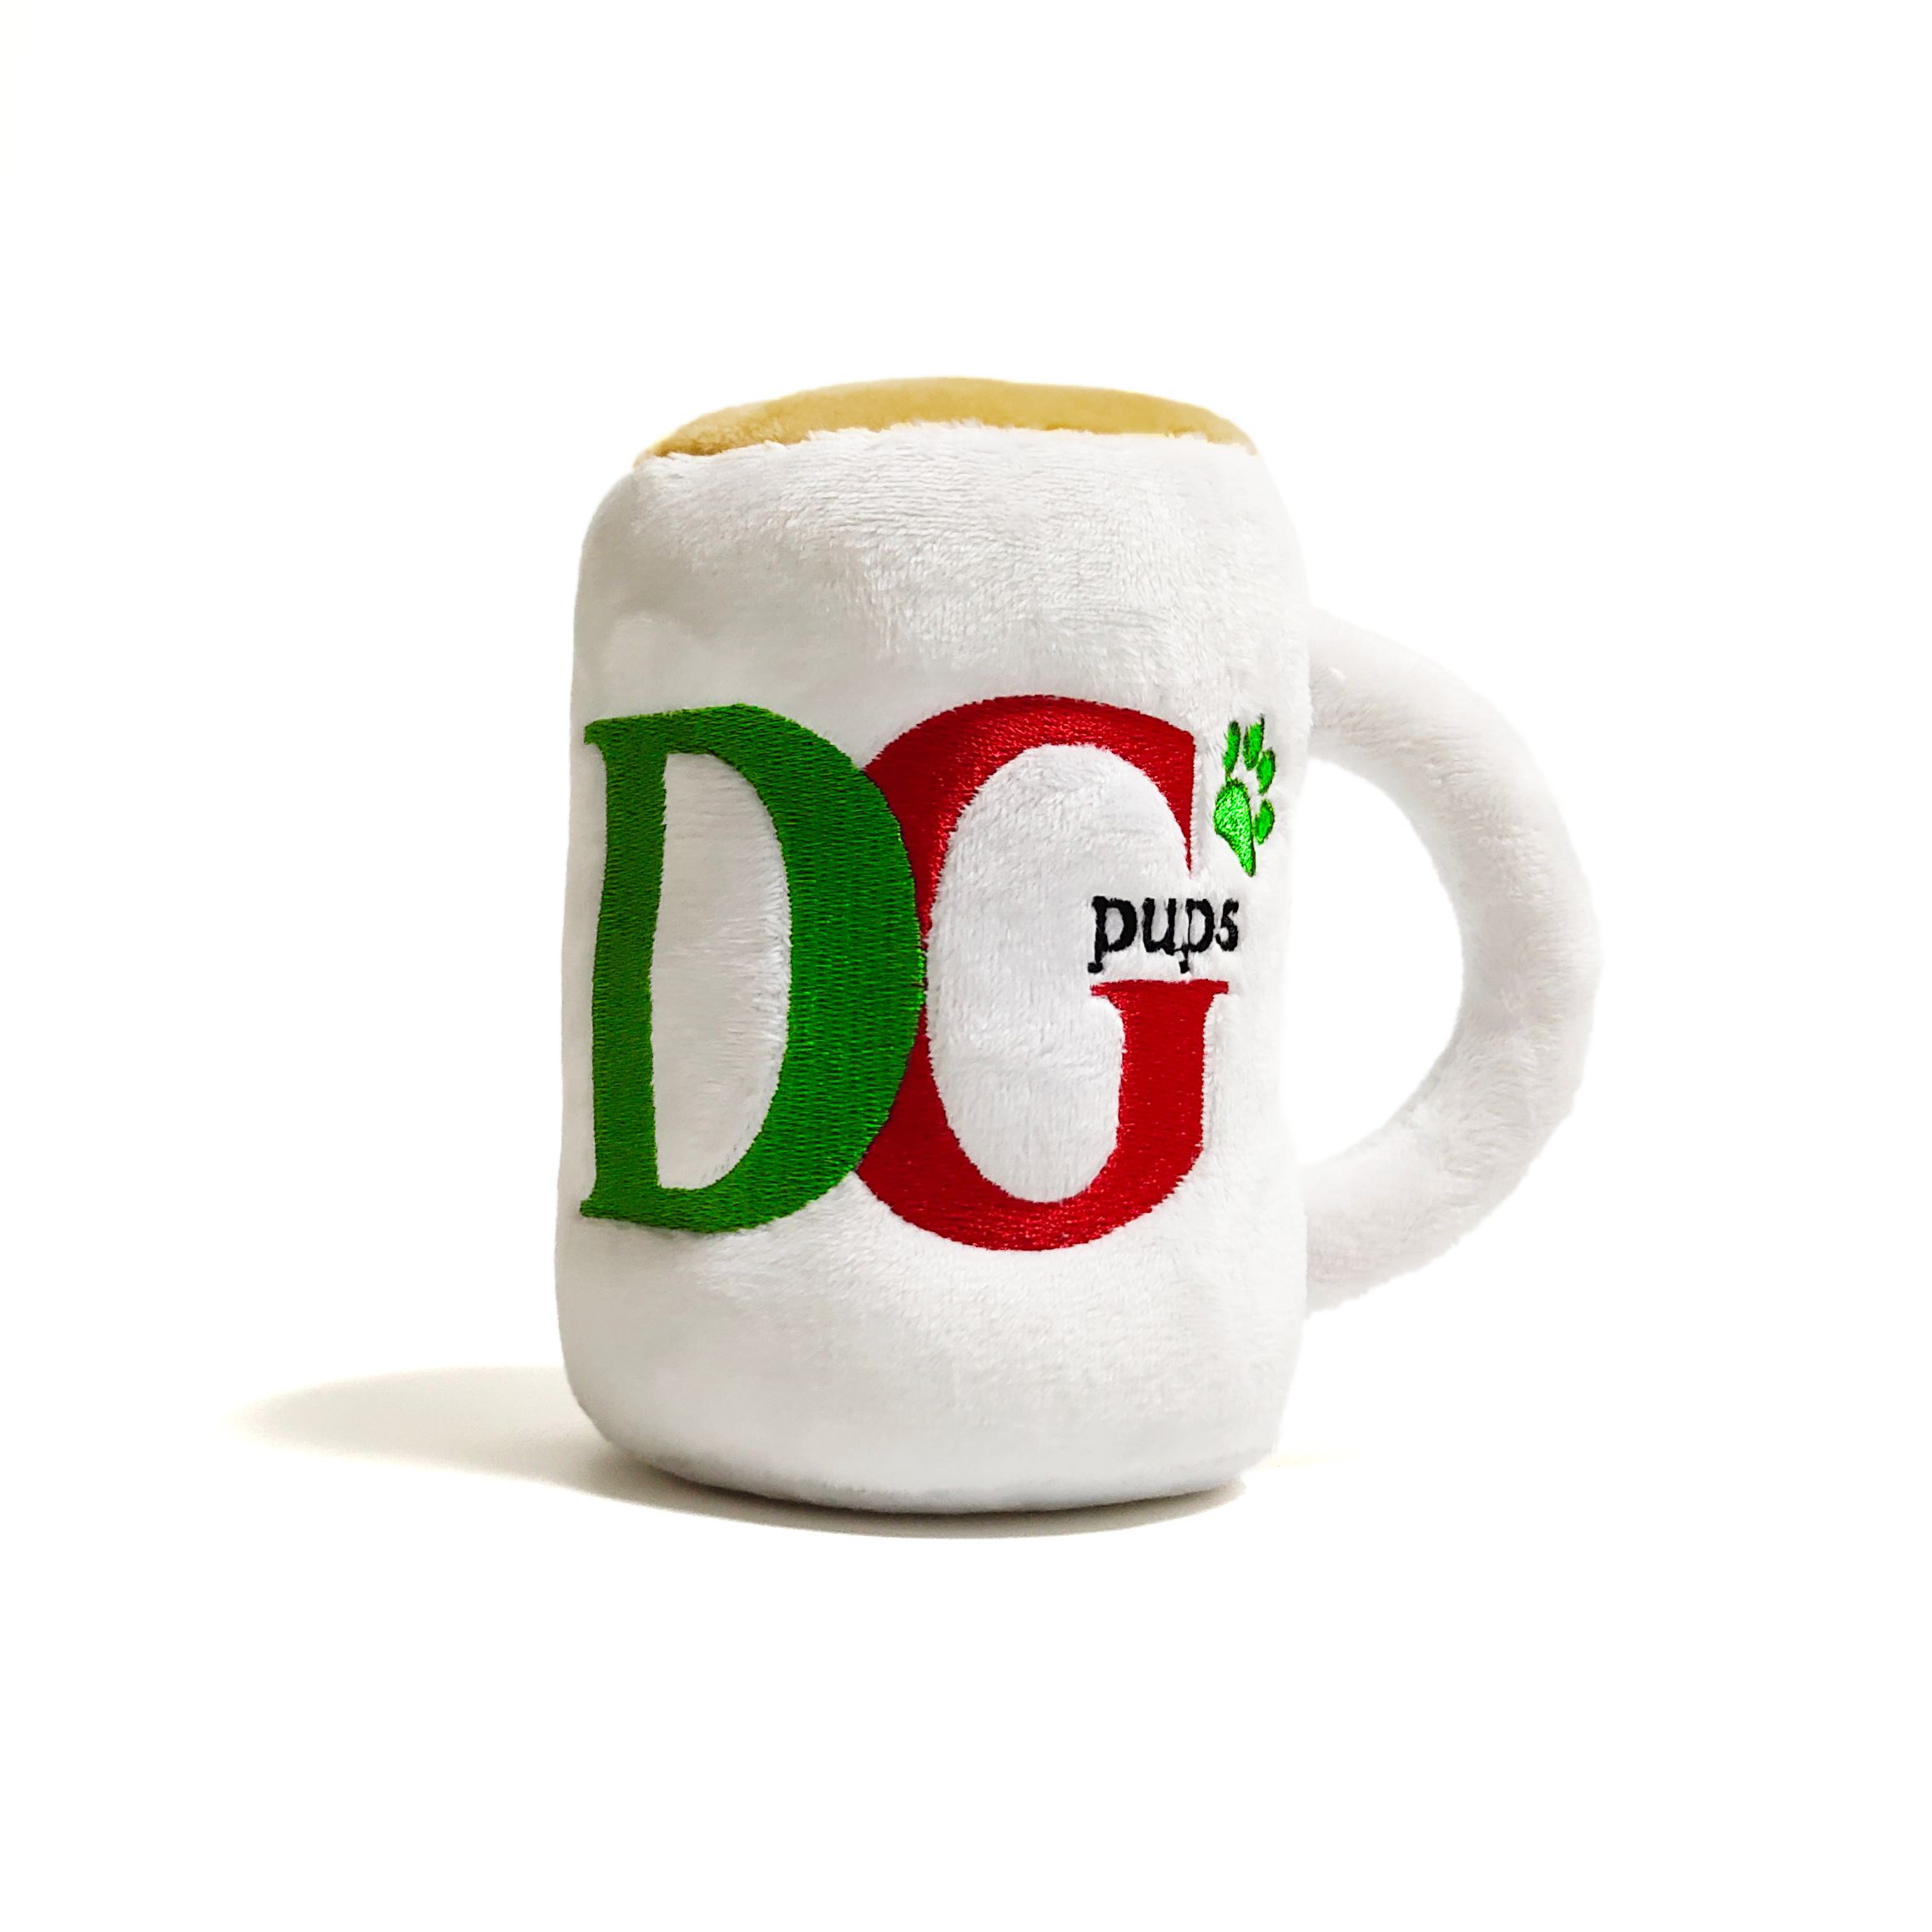 CatwalkDog DG Pups Mug Toy